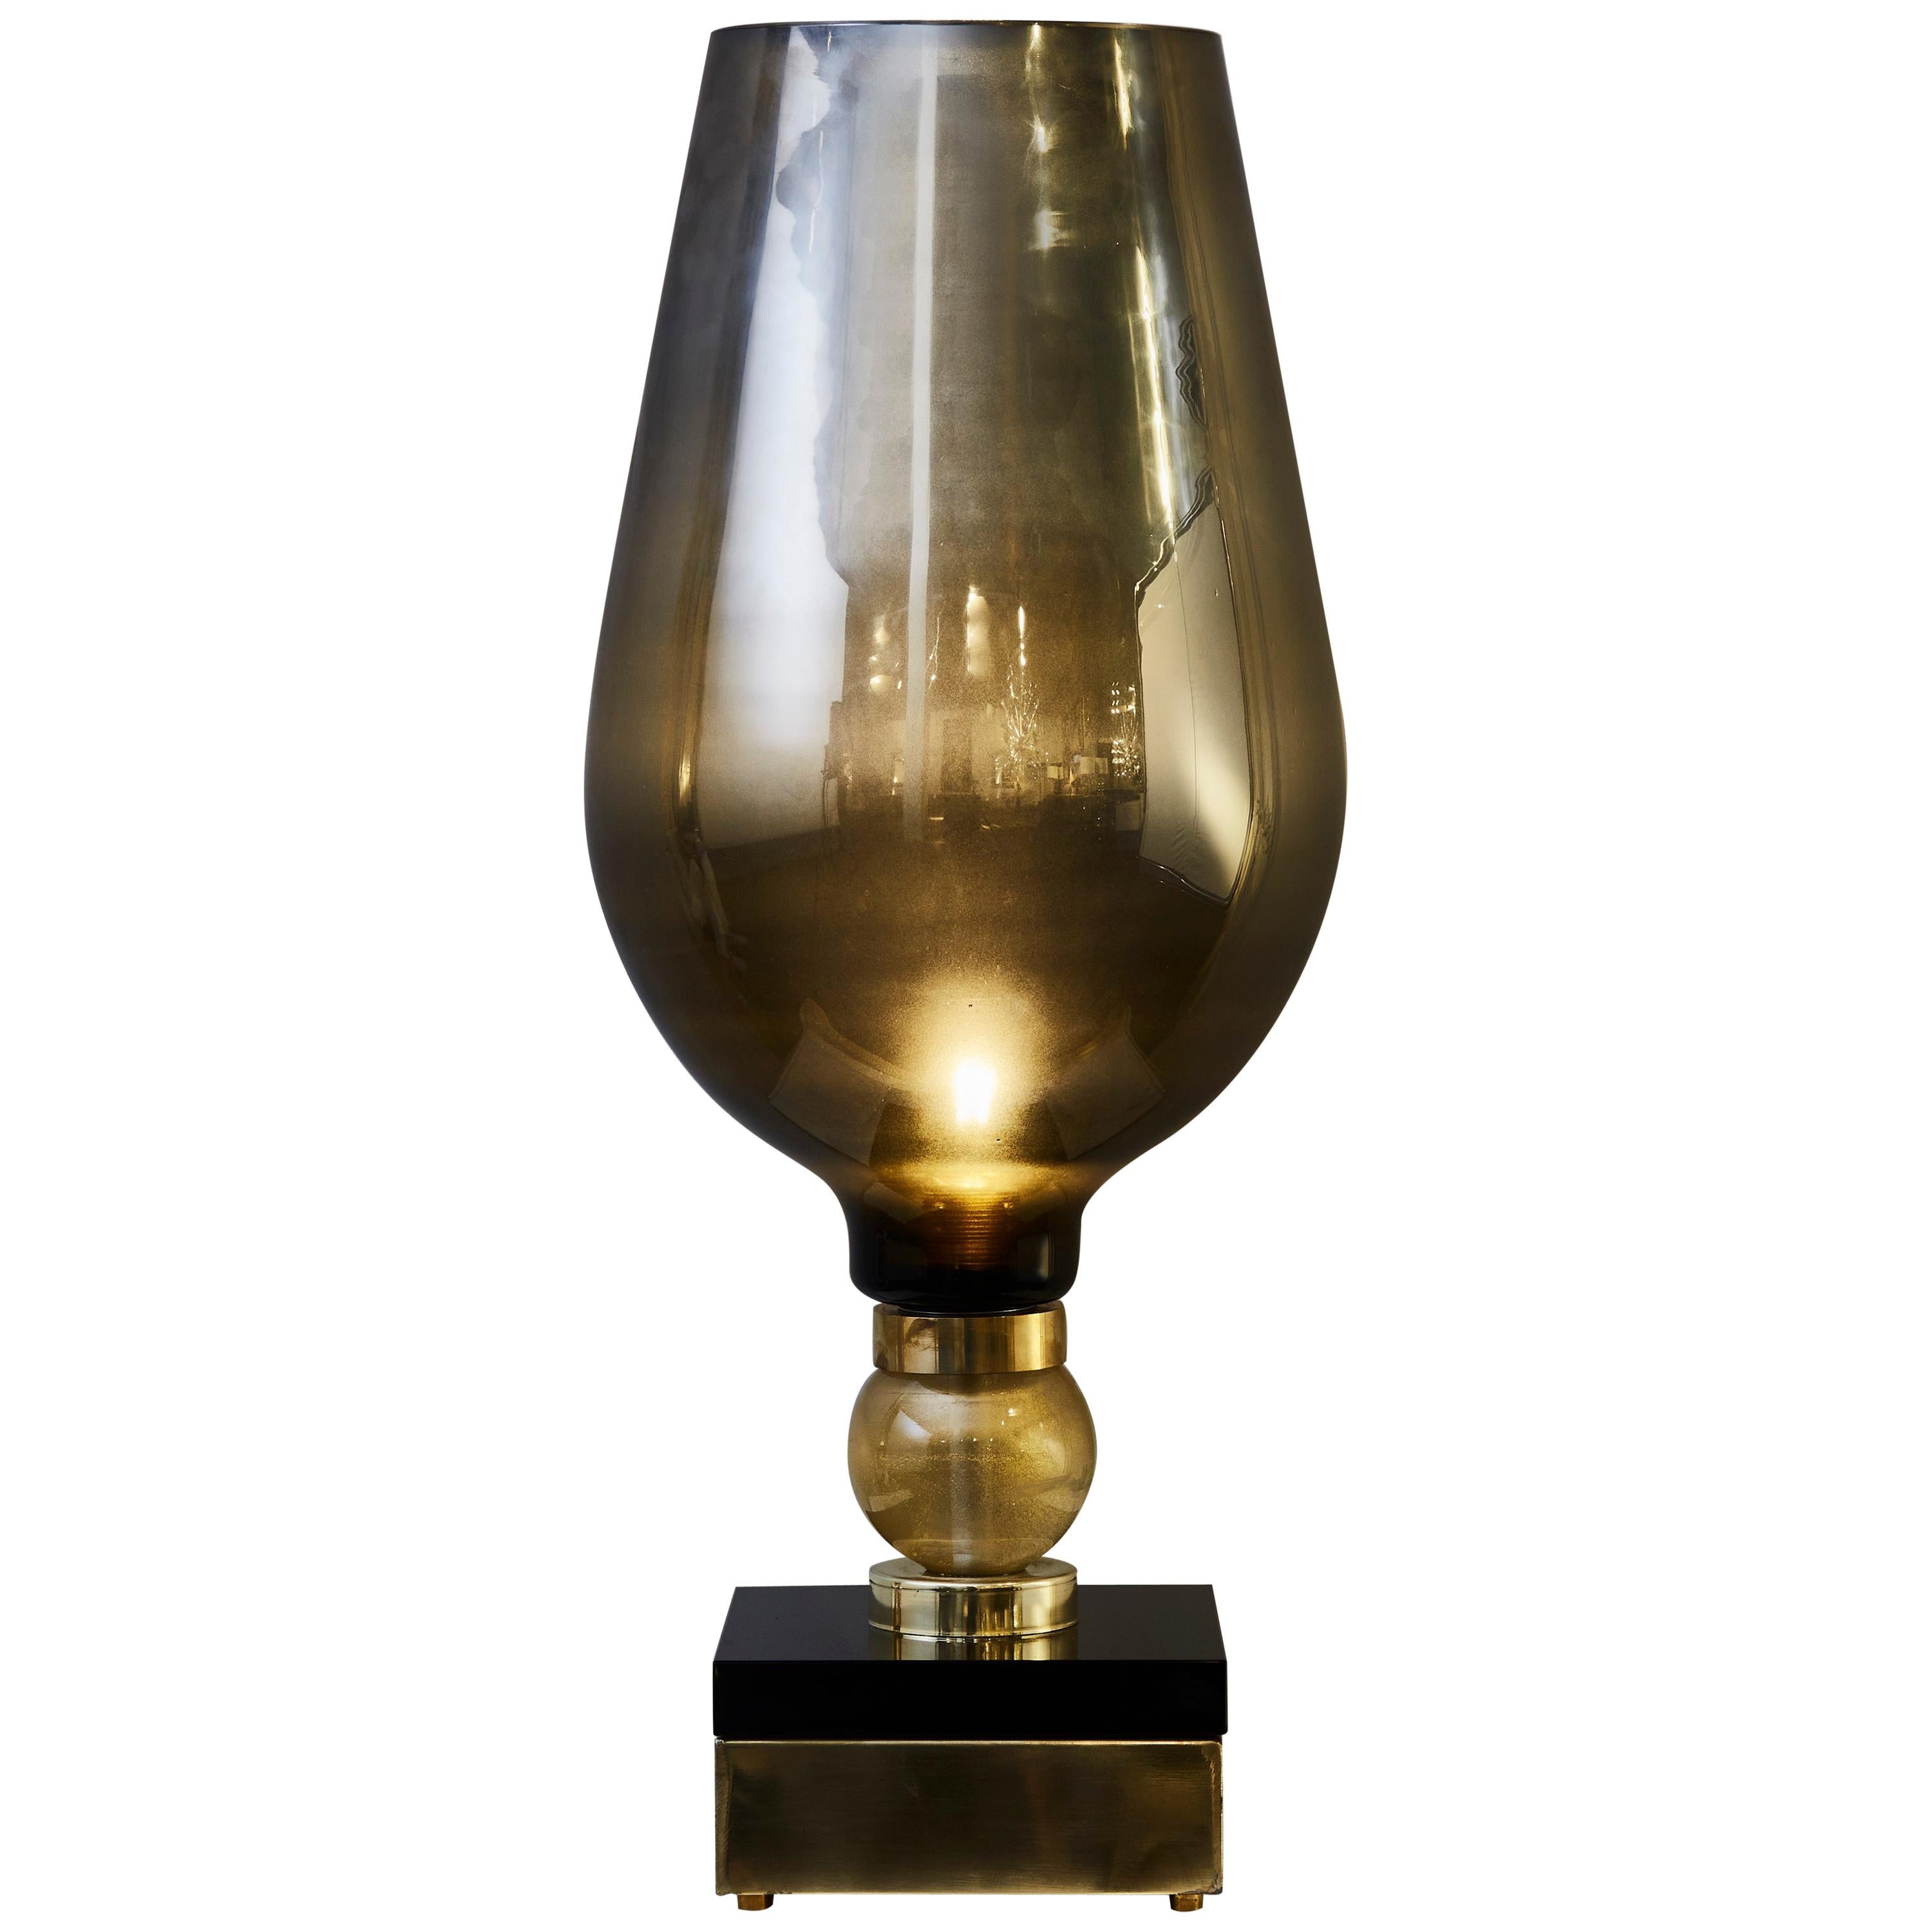 Murano Glas Lampen zum Selbstkostenpreis im Angebot